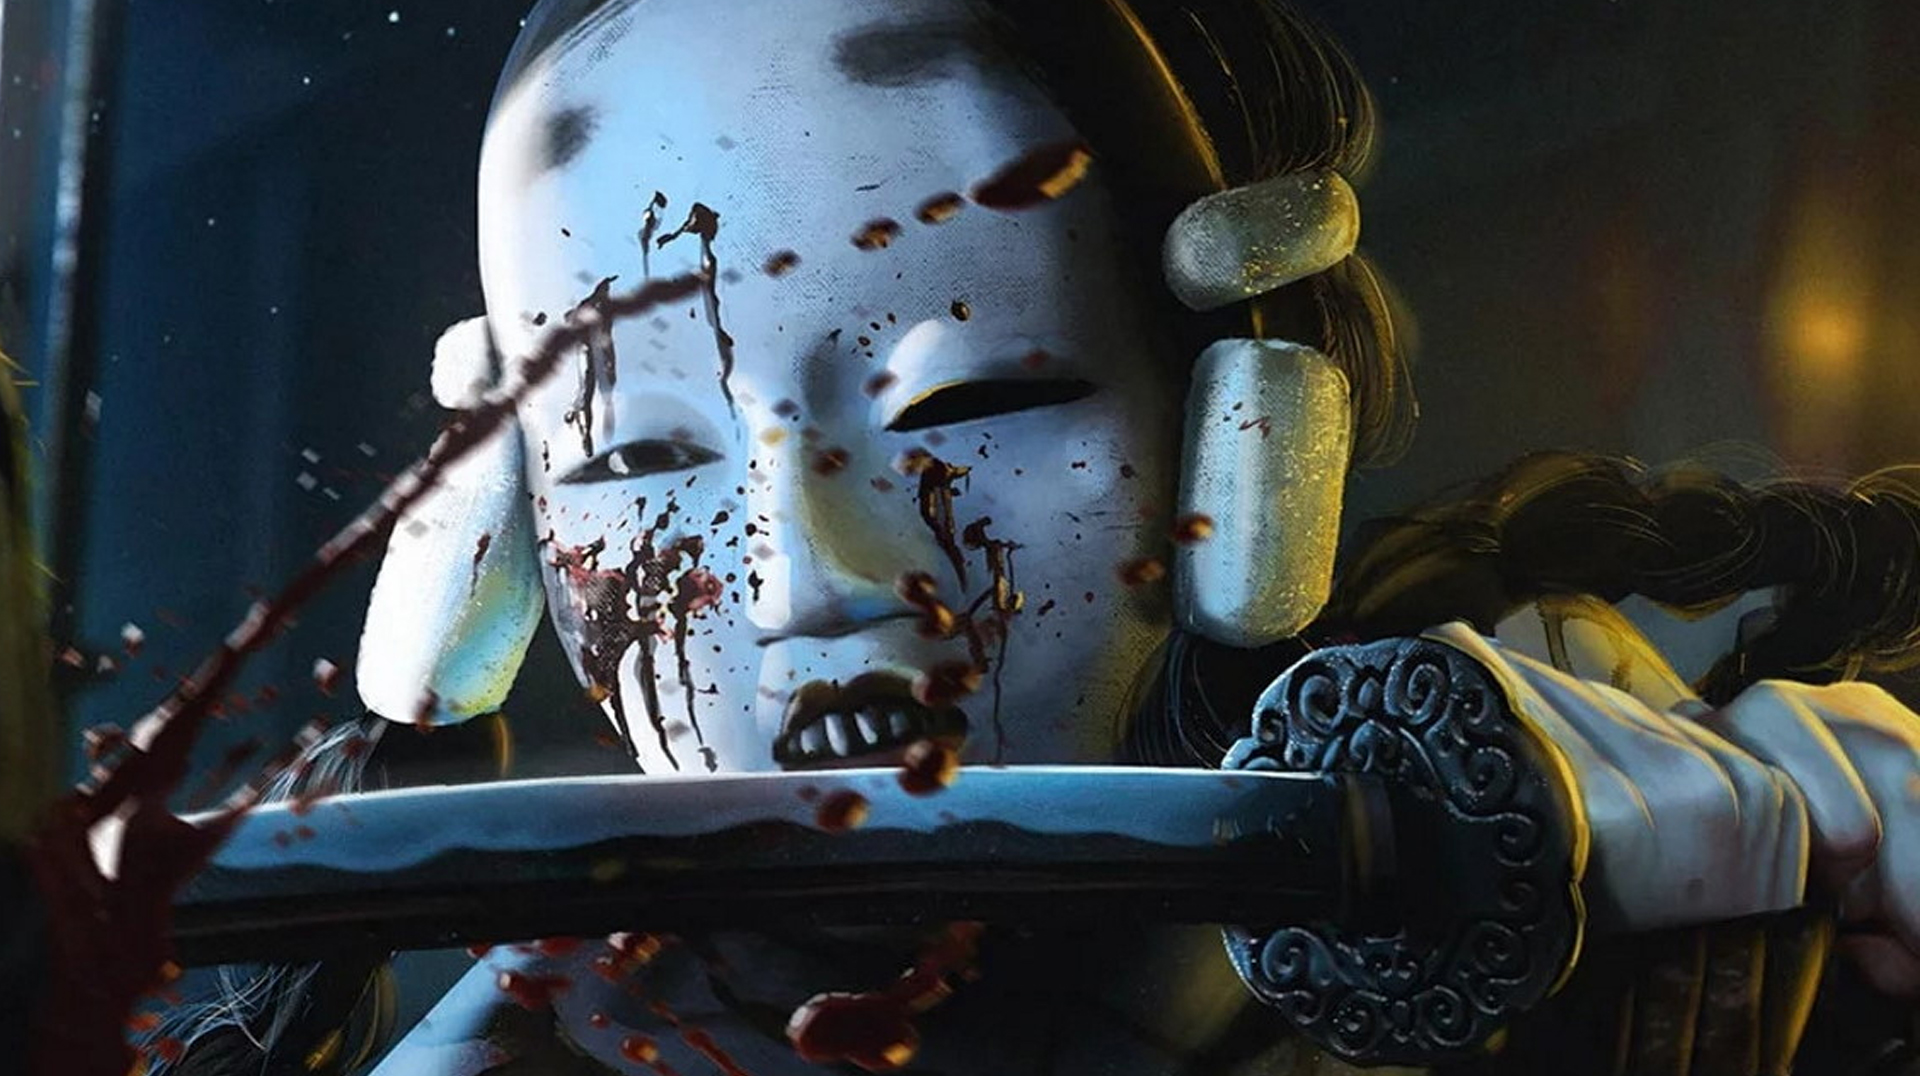 Witcher 3 devs’ new game sounds like Destiny 2 with ninjas